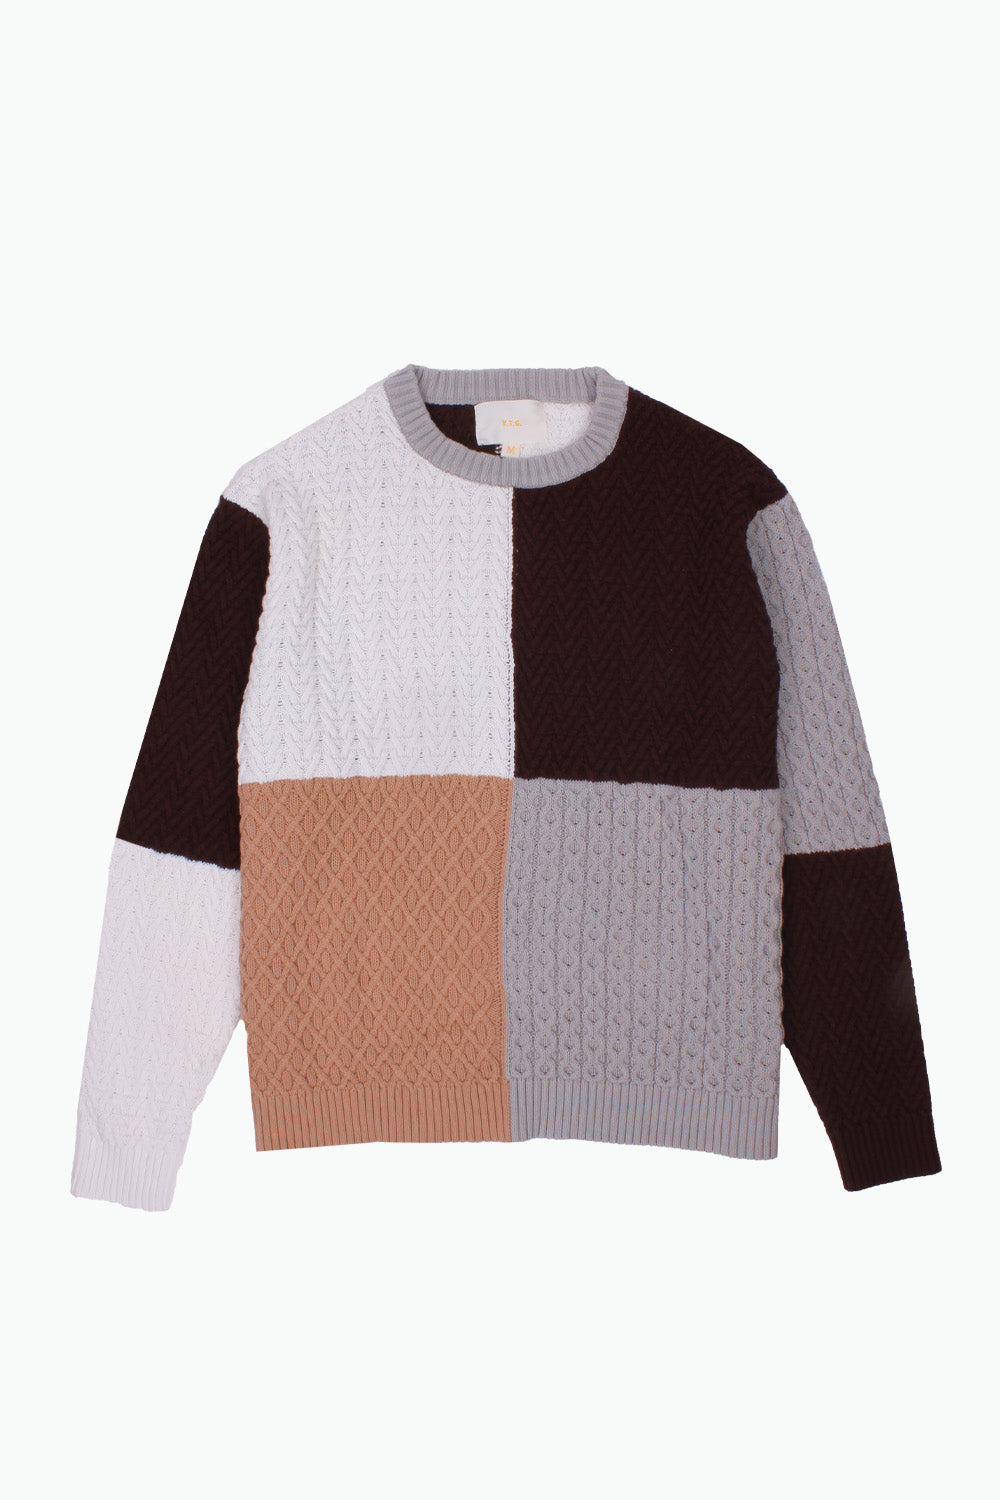 Black Coffee and Espresso Color-block Sweater